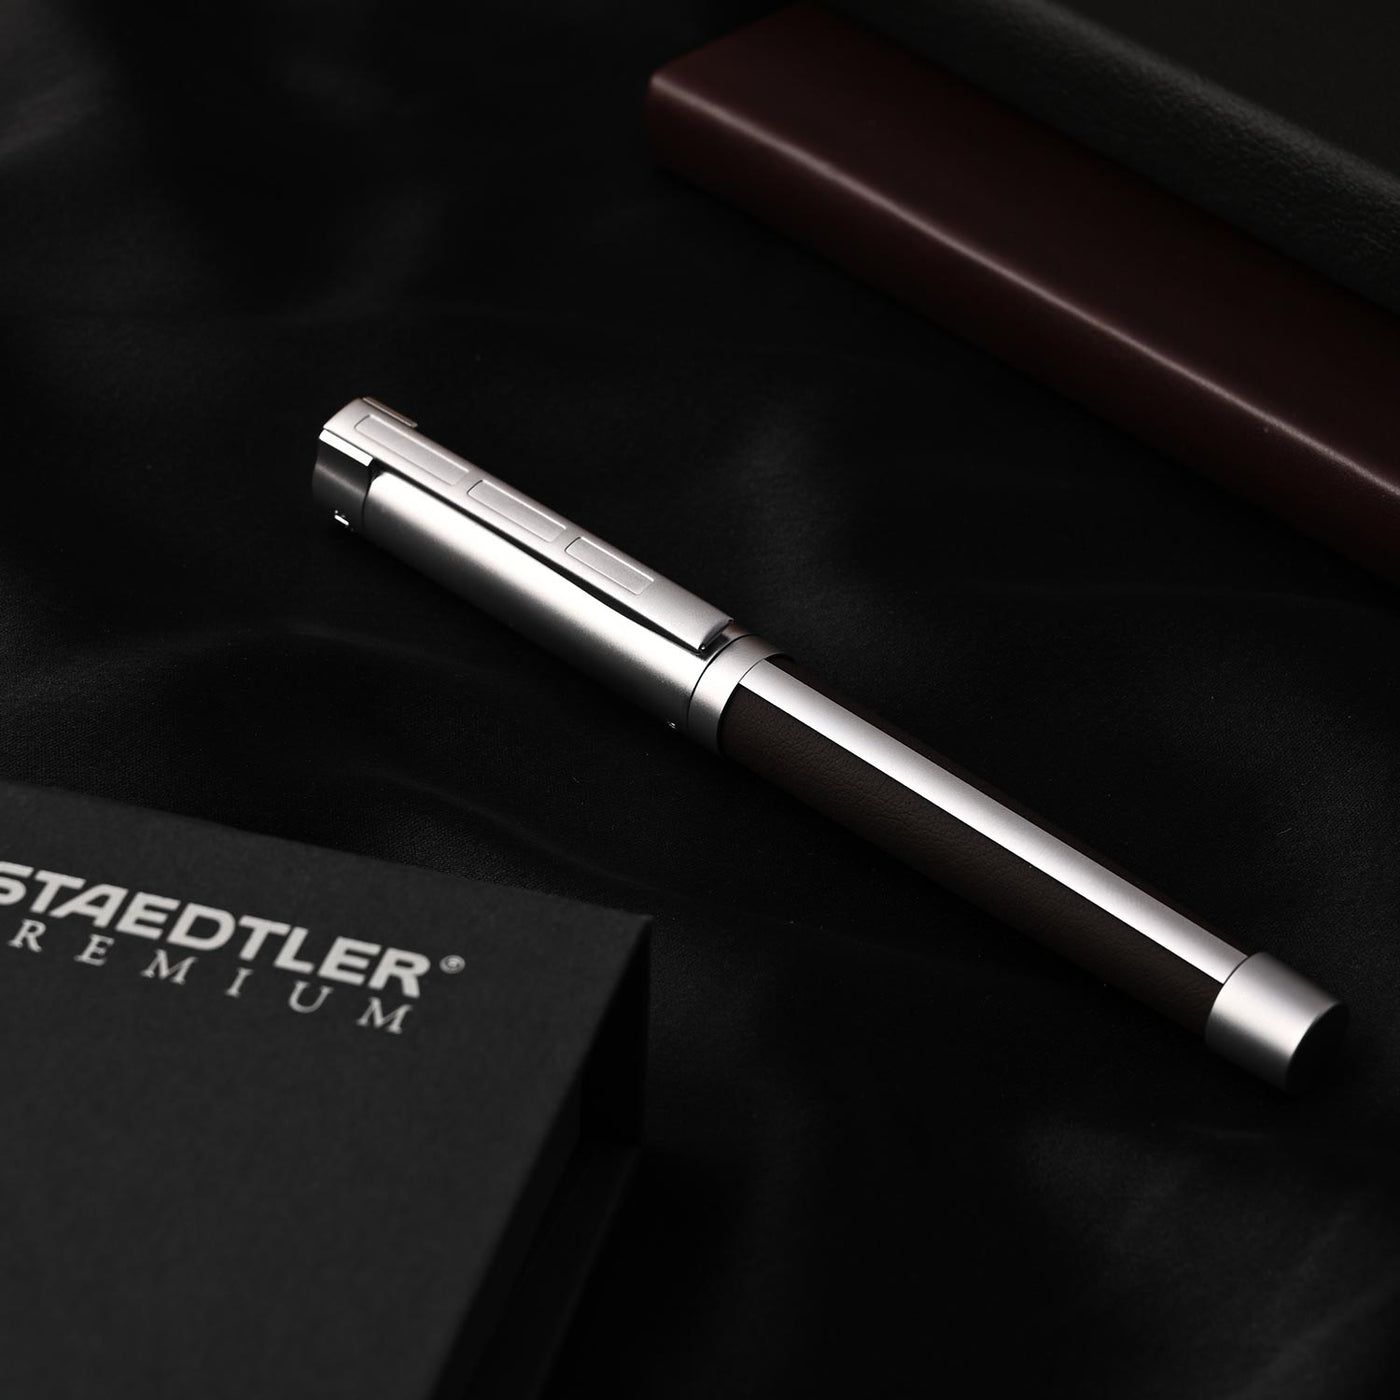 Staedtler Premium Corium Simplex Fountain Pen - Brown Leather CT